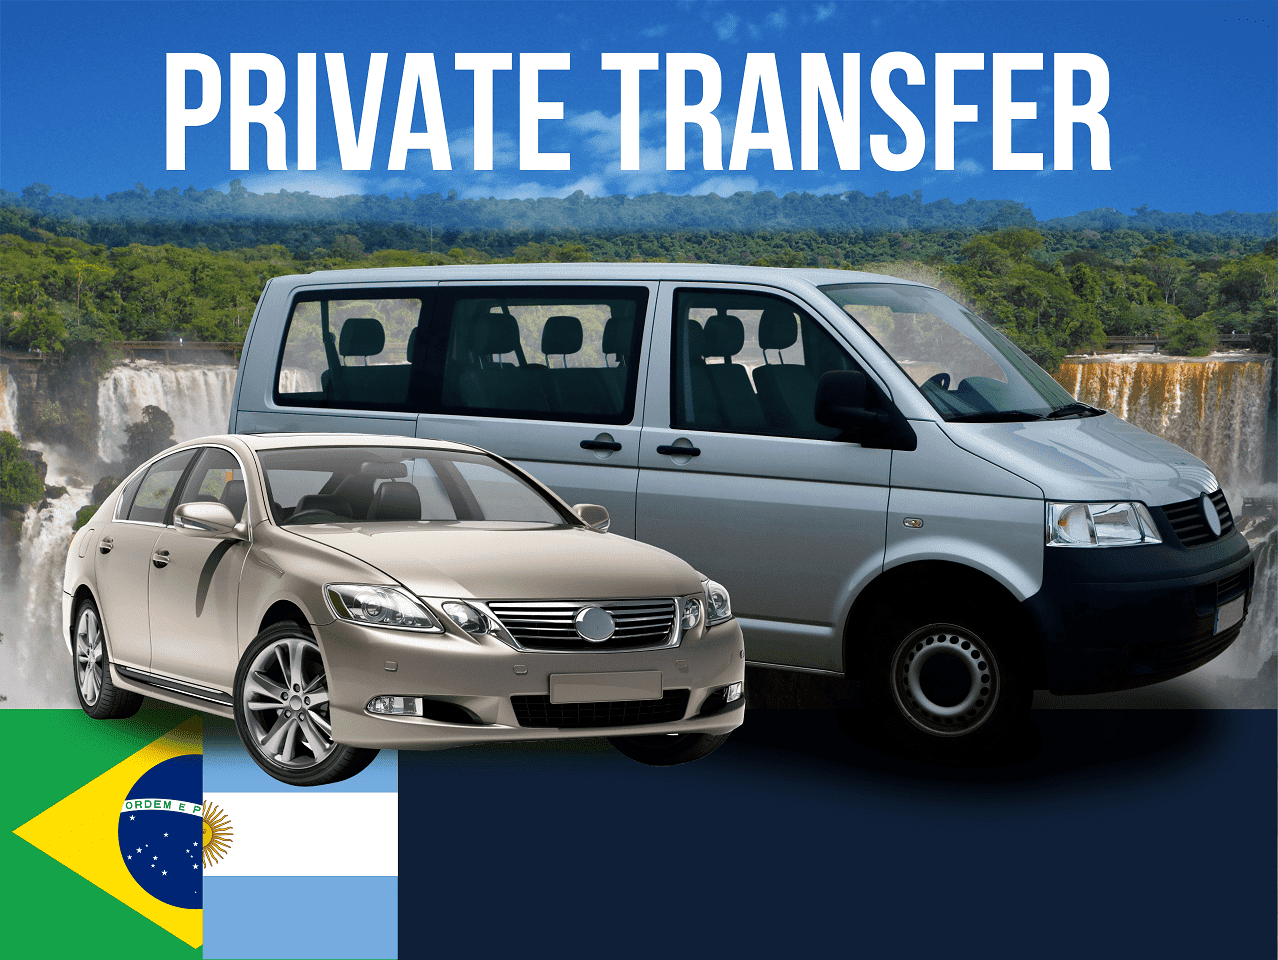 Private Transfer